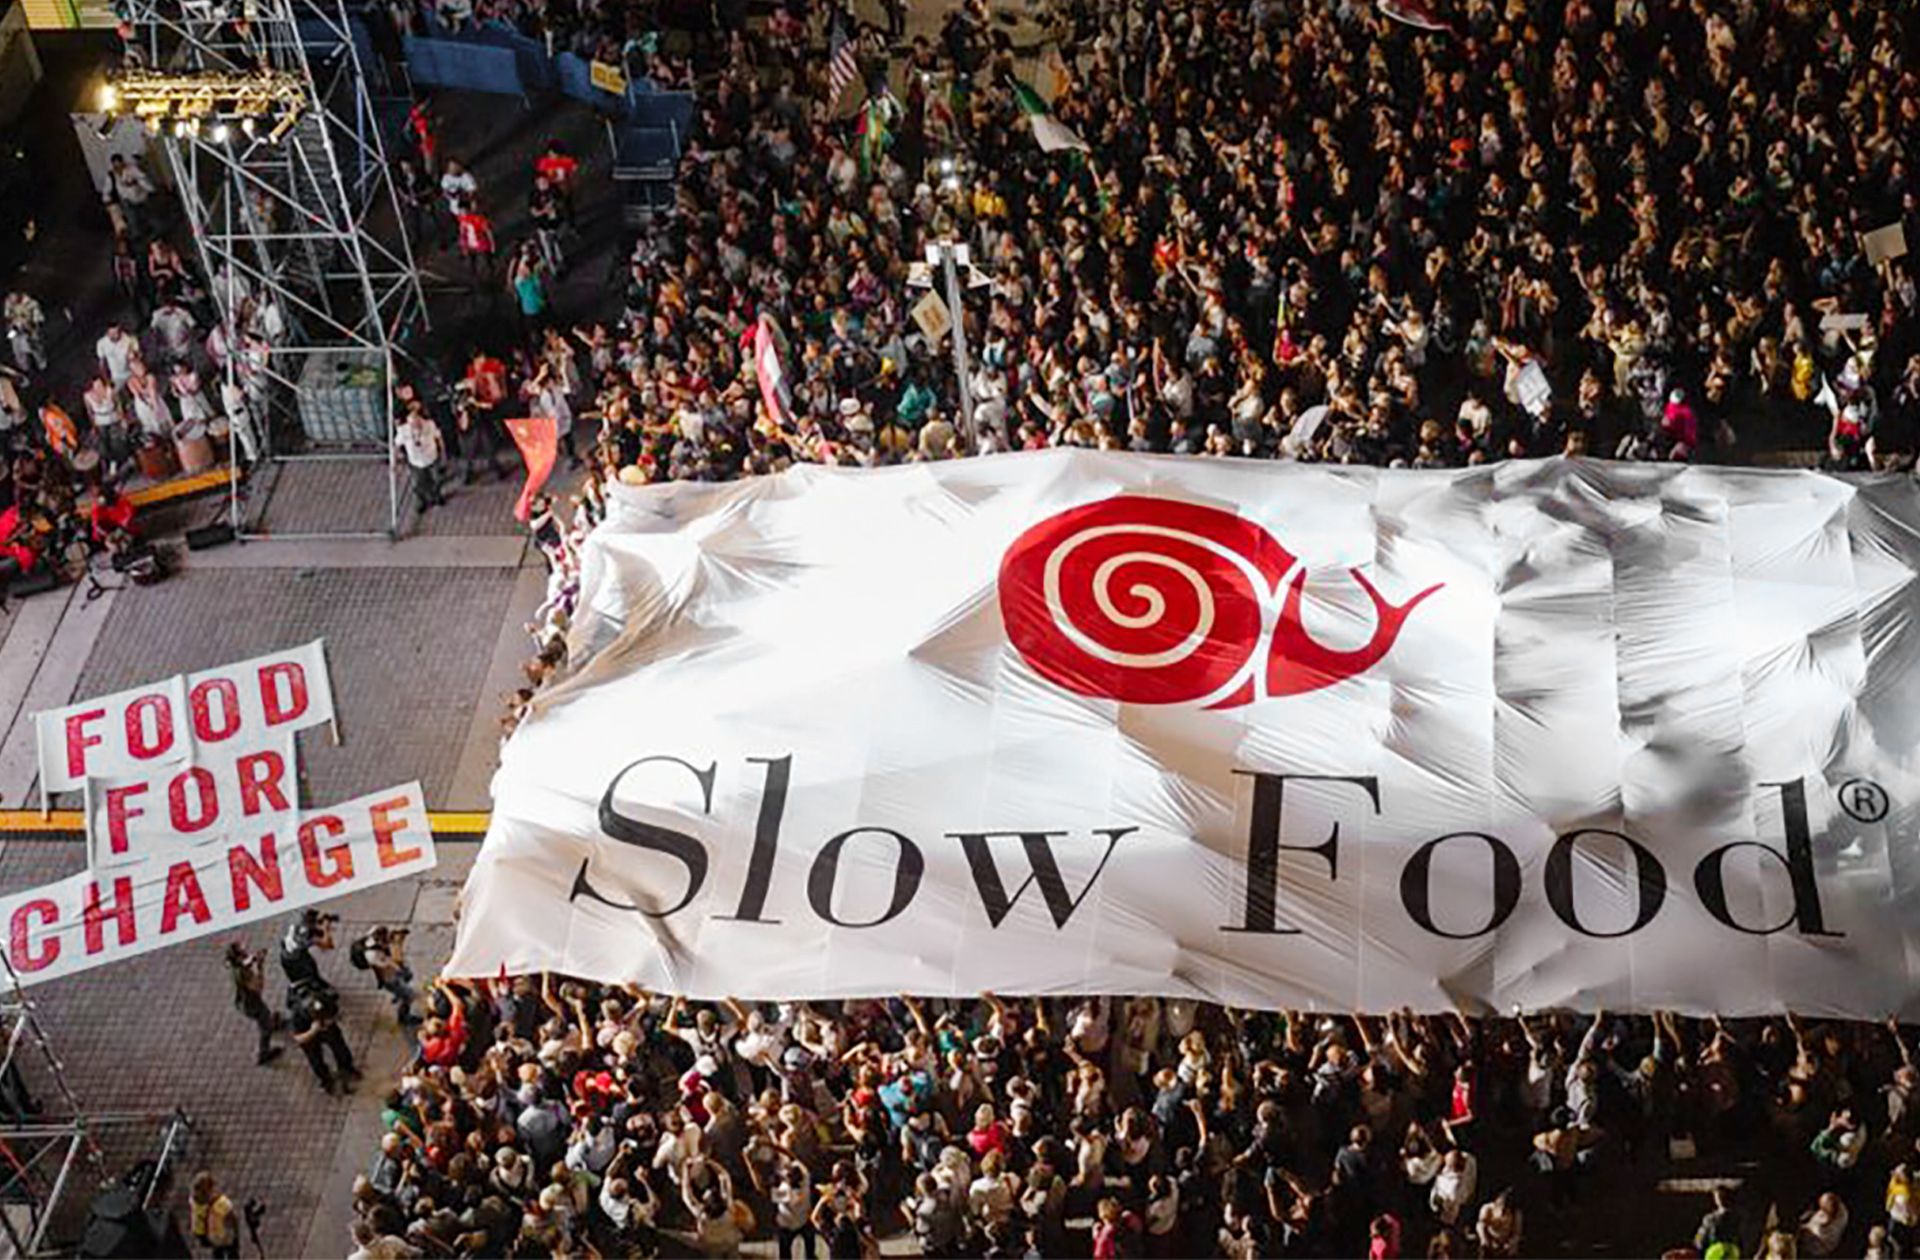 Slow Food is een mondiale beweging die zich inzet voor een sociaal en ecologisch verantwoord levensmiddelensysteem, waarbij de biodiversiteit en het dierenwelzijn worden beschermd. Sinds de oprichting in 1986 heeft Slow Food zich ontwikkeld tot een organisatie die miljoenen mensen in 170 landen omvat.